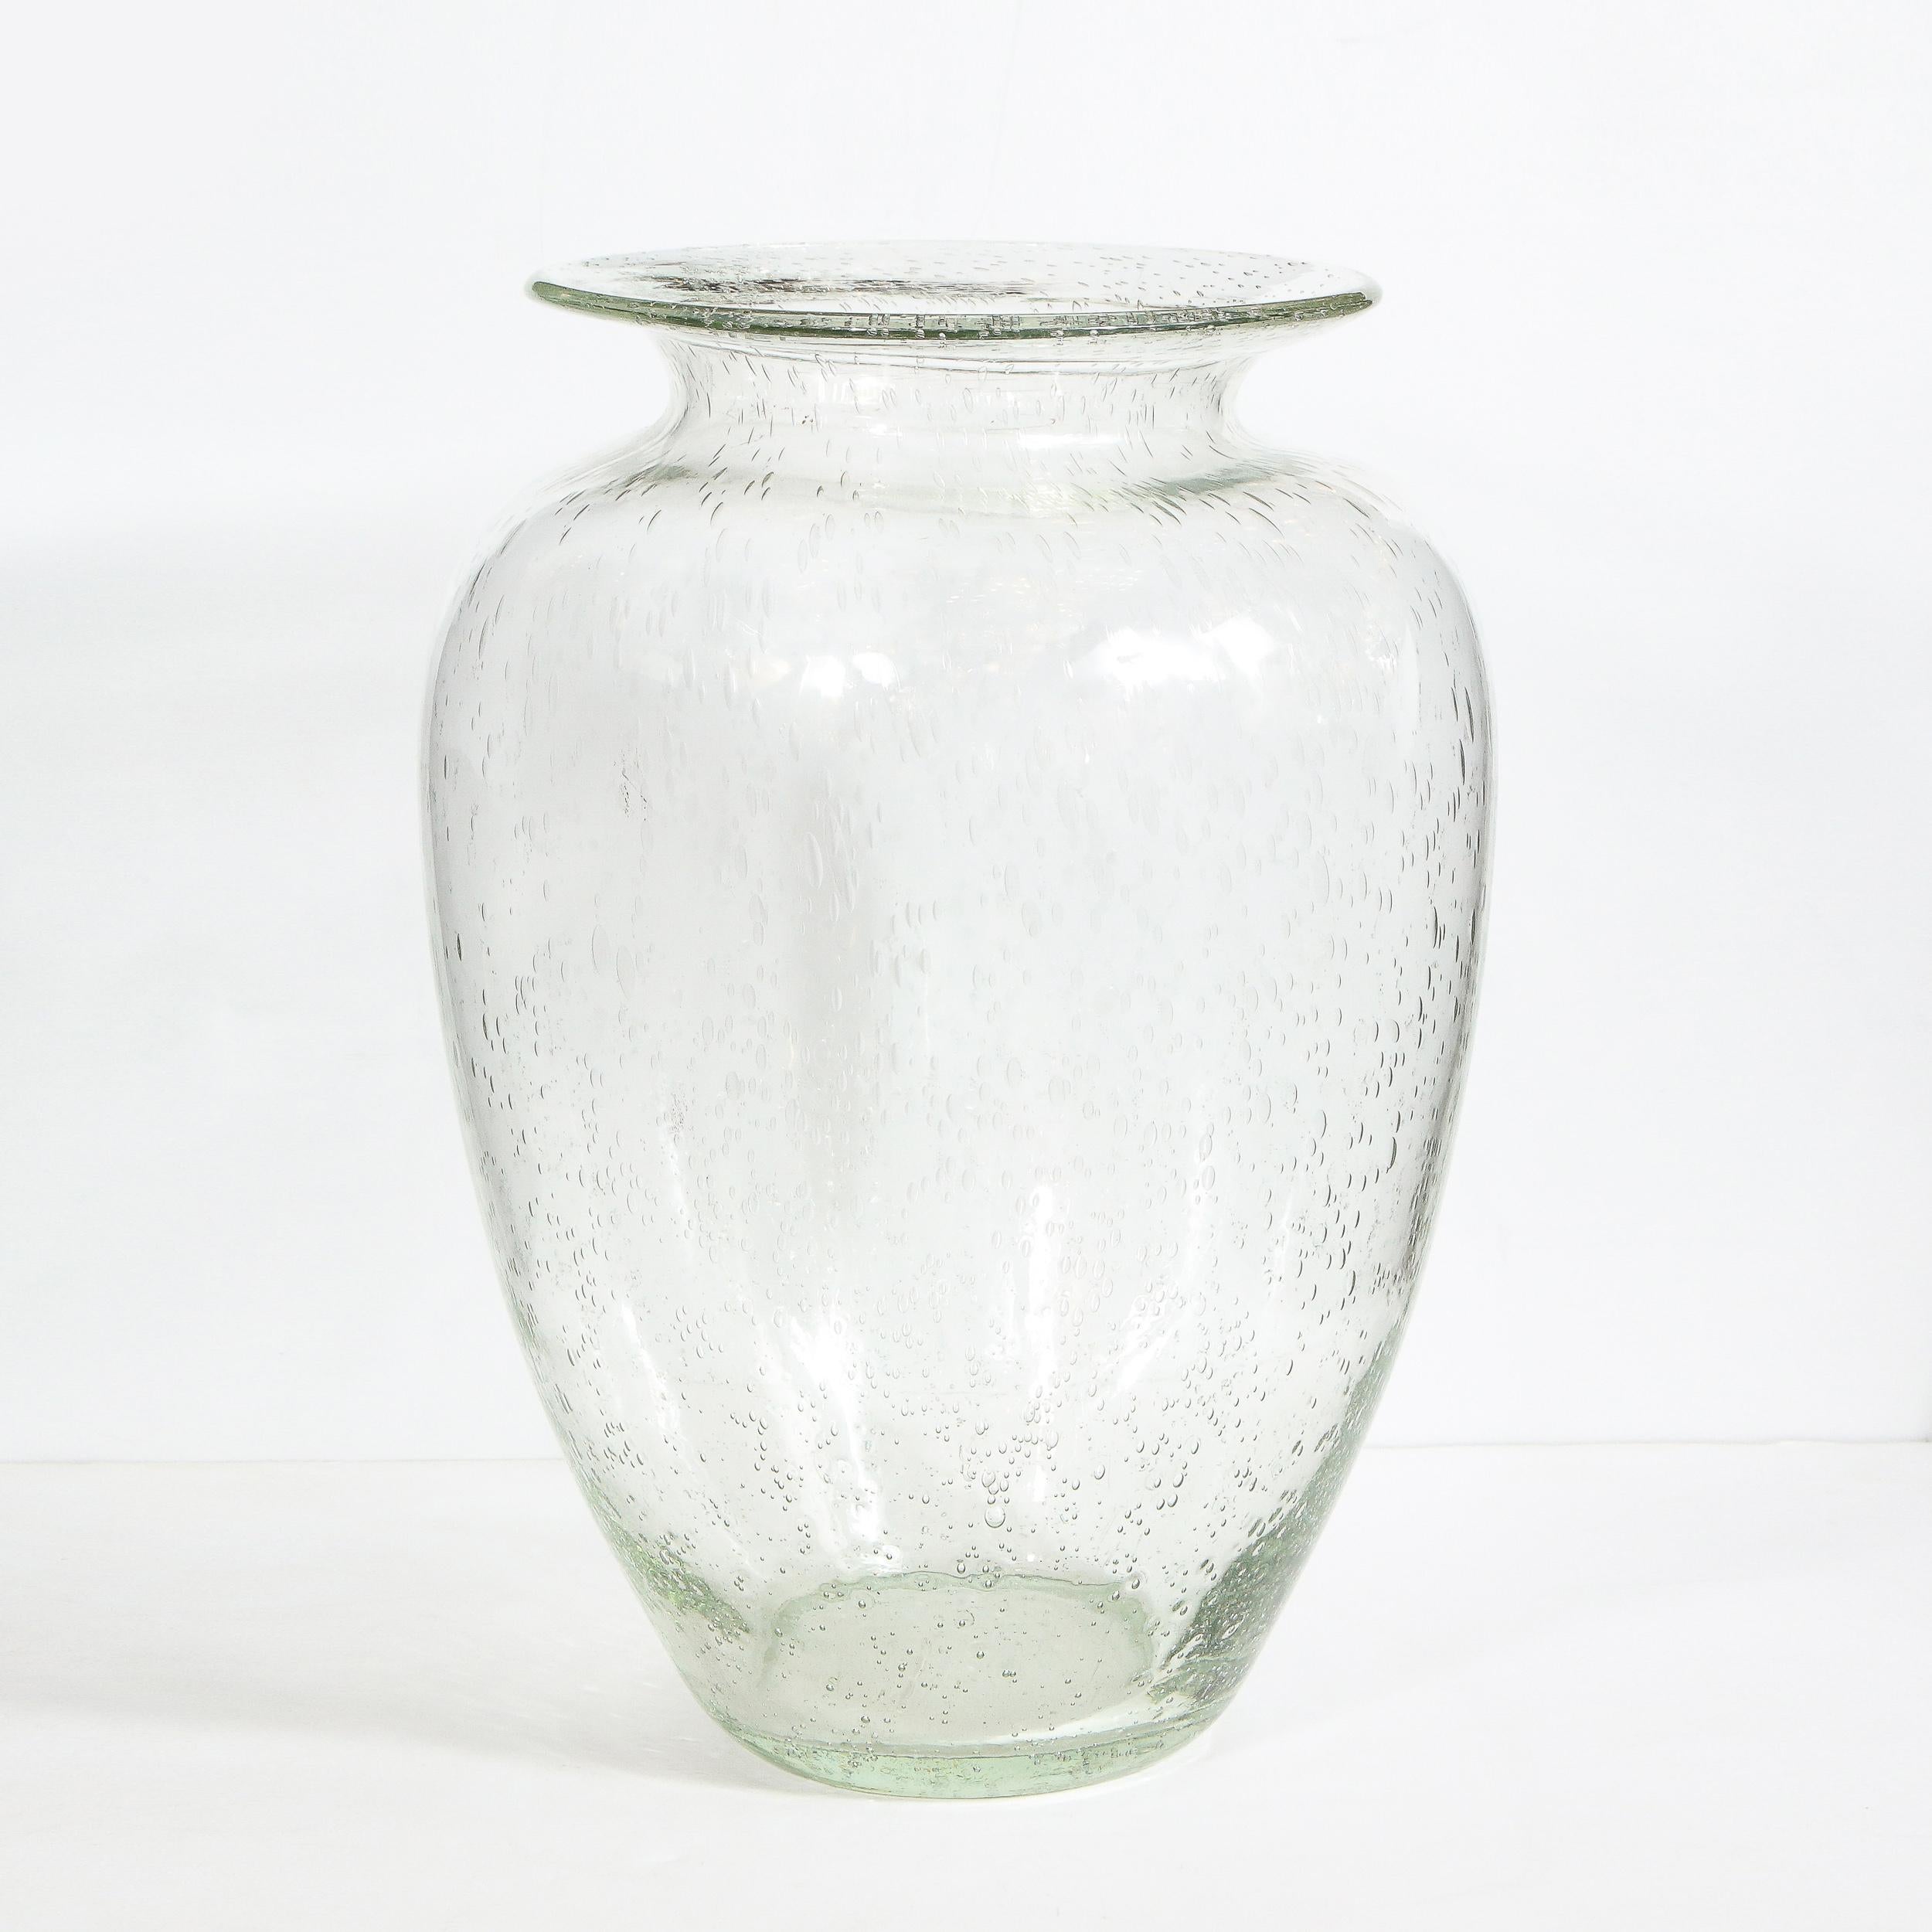 Diese wunderschöne modernistische Vase wurde in Murano, Italien, mundgeblasen - der Insel vor der Küste Venedigs, die seit Jahrhunderten für ihre hervorragende Glasproduktion bekannt ist. Der konische Körper verjüngt sich an beiden Enden und weitet